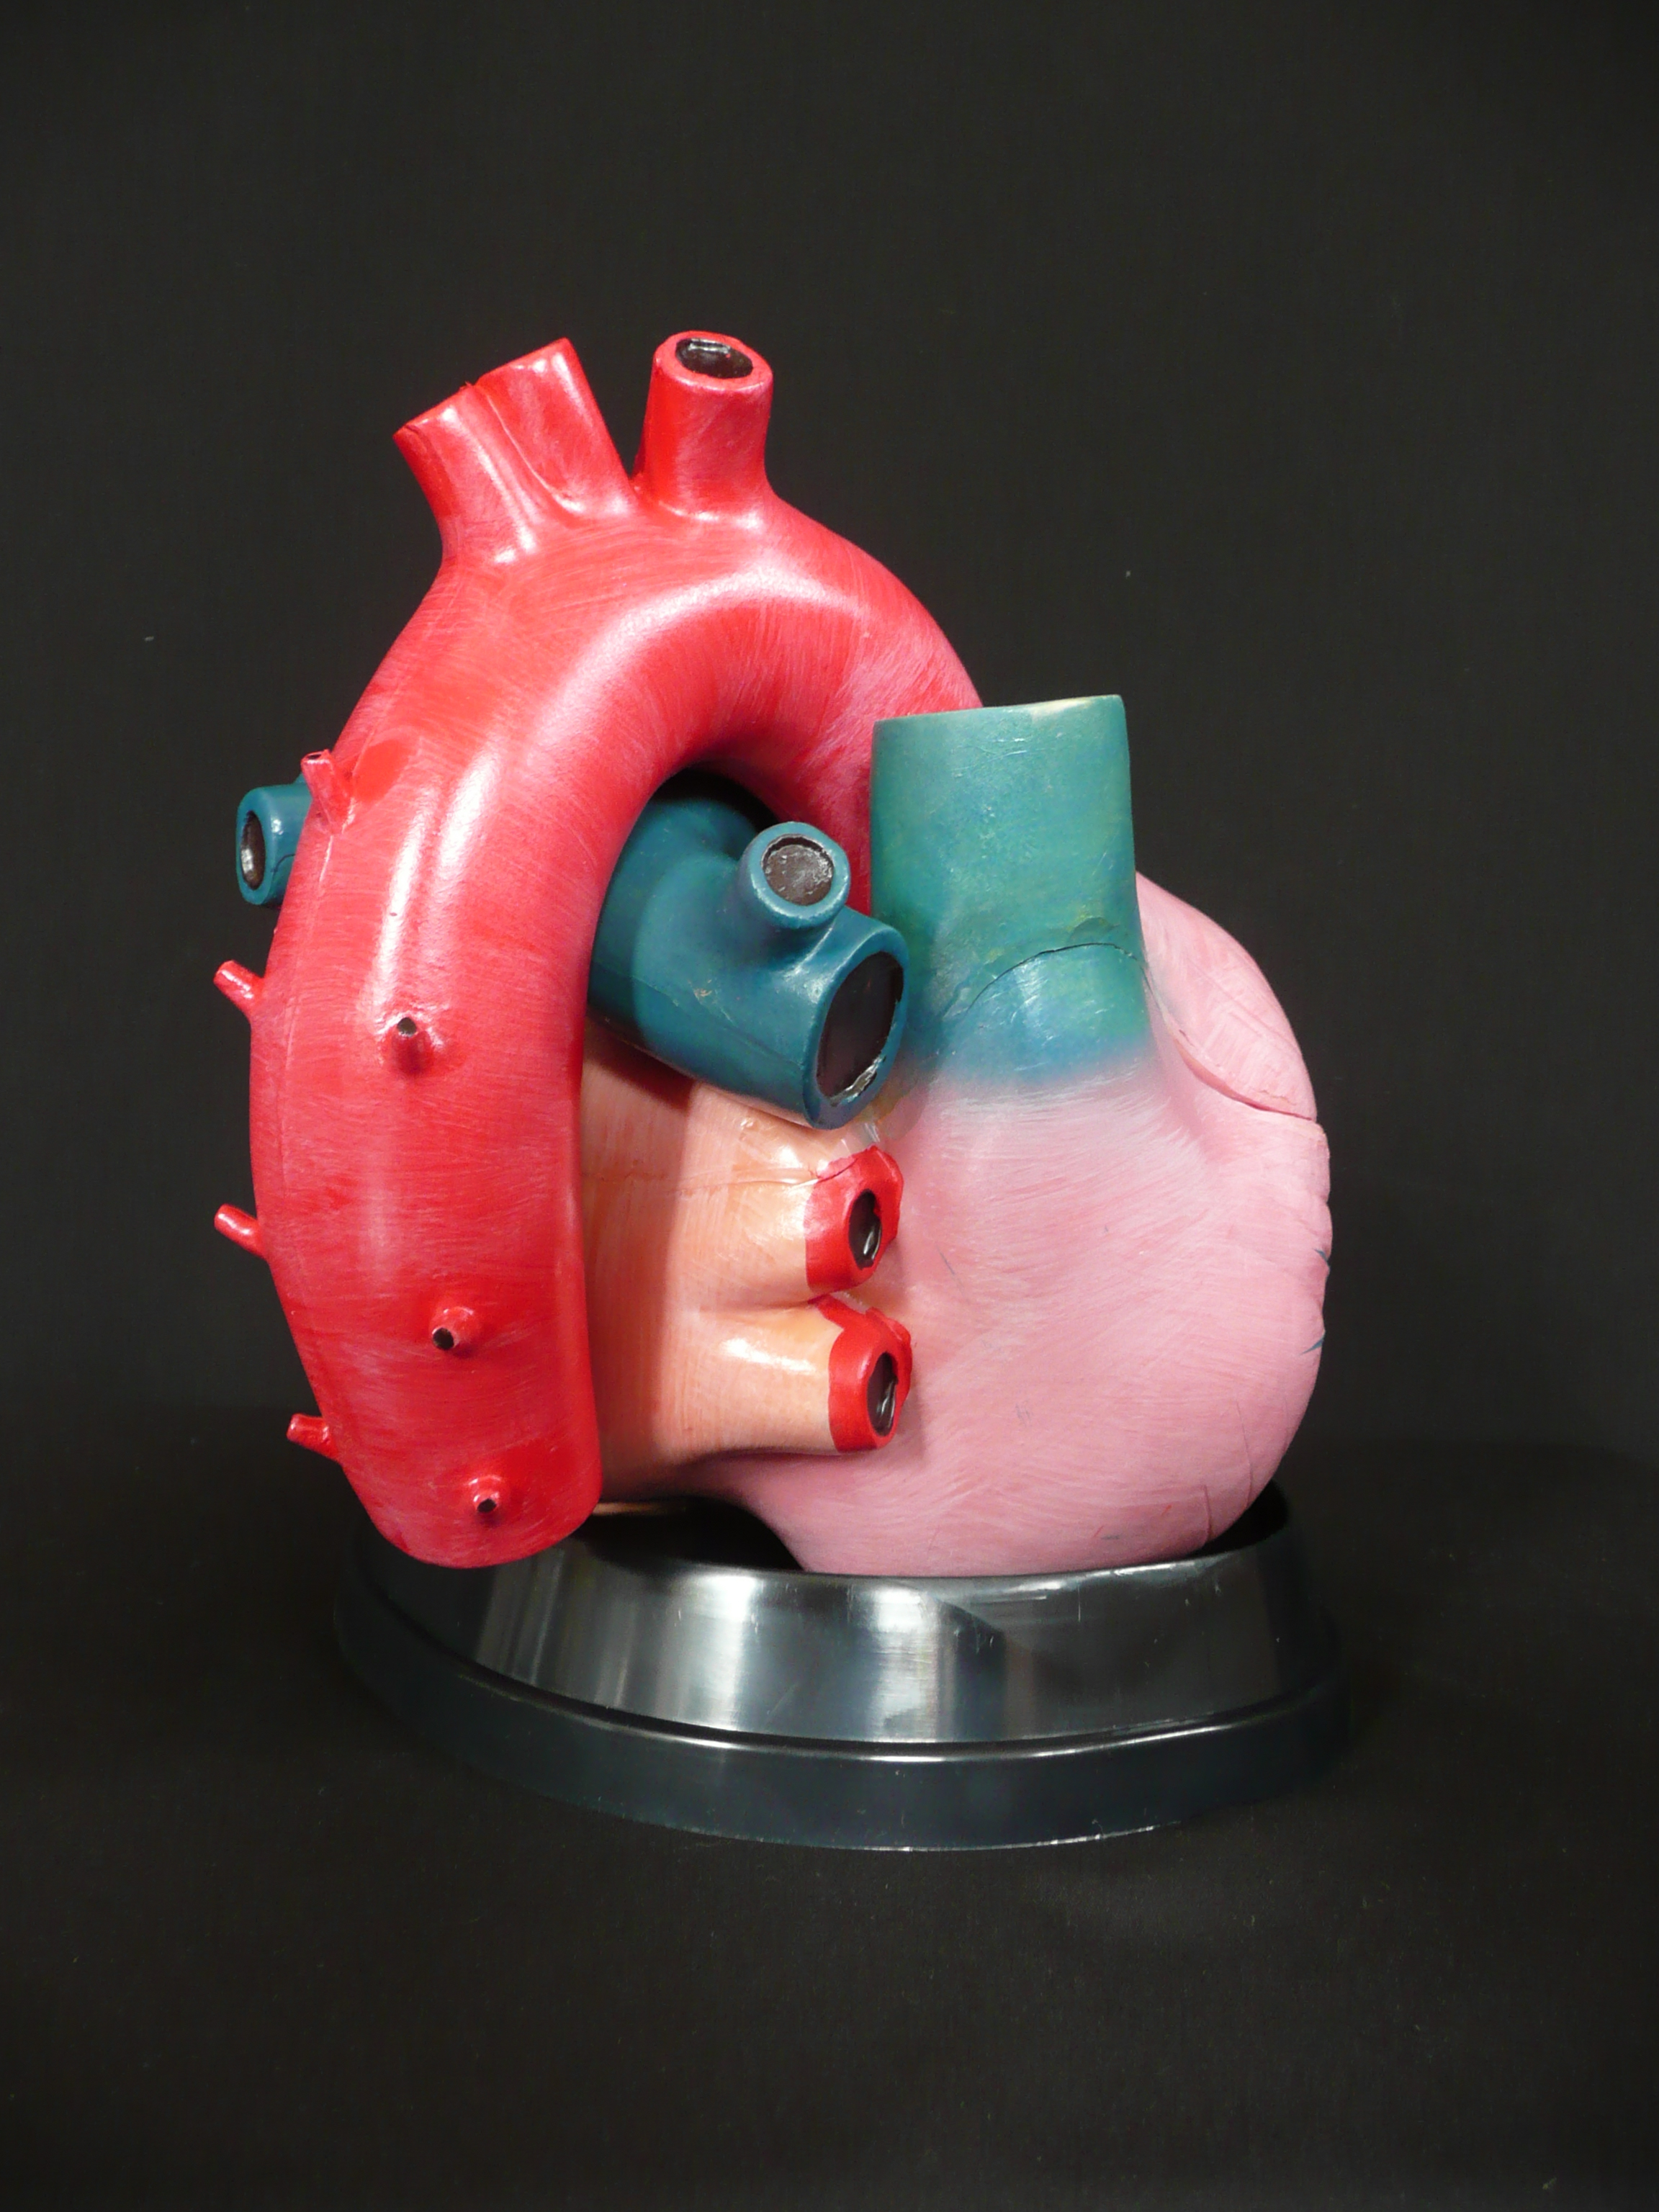 heart model 3dweather